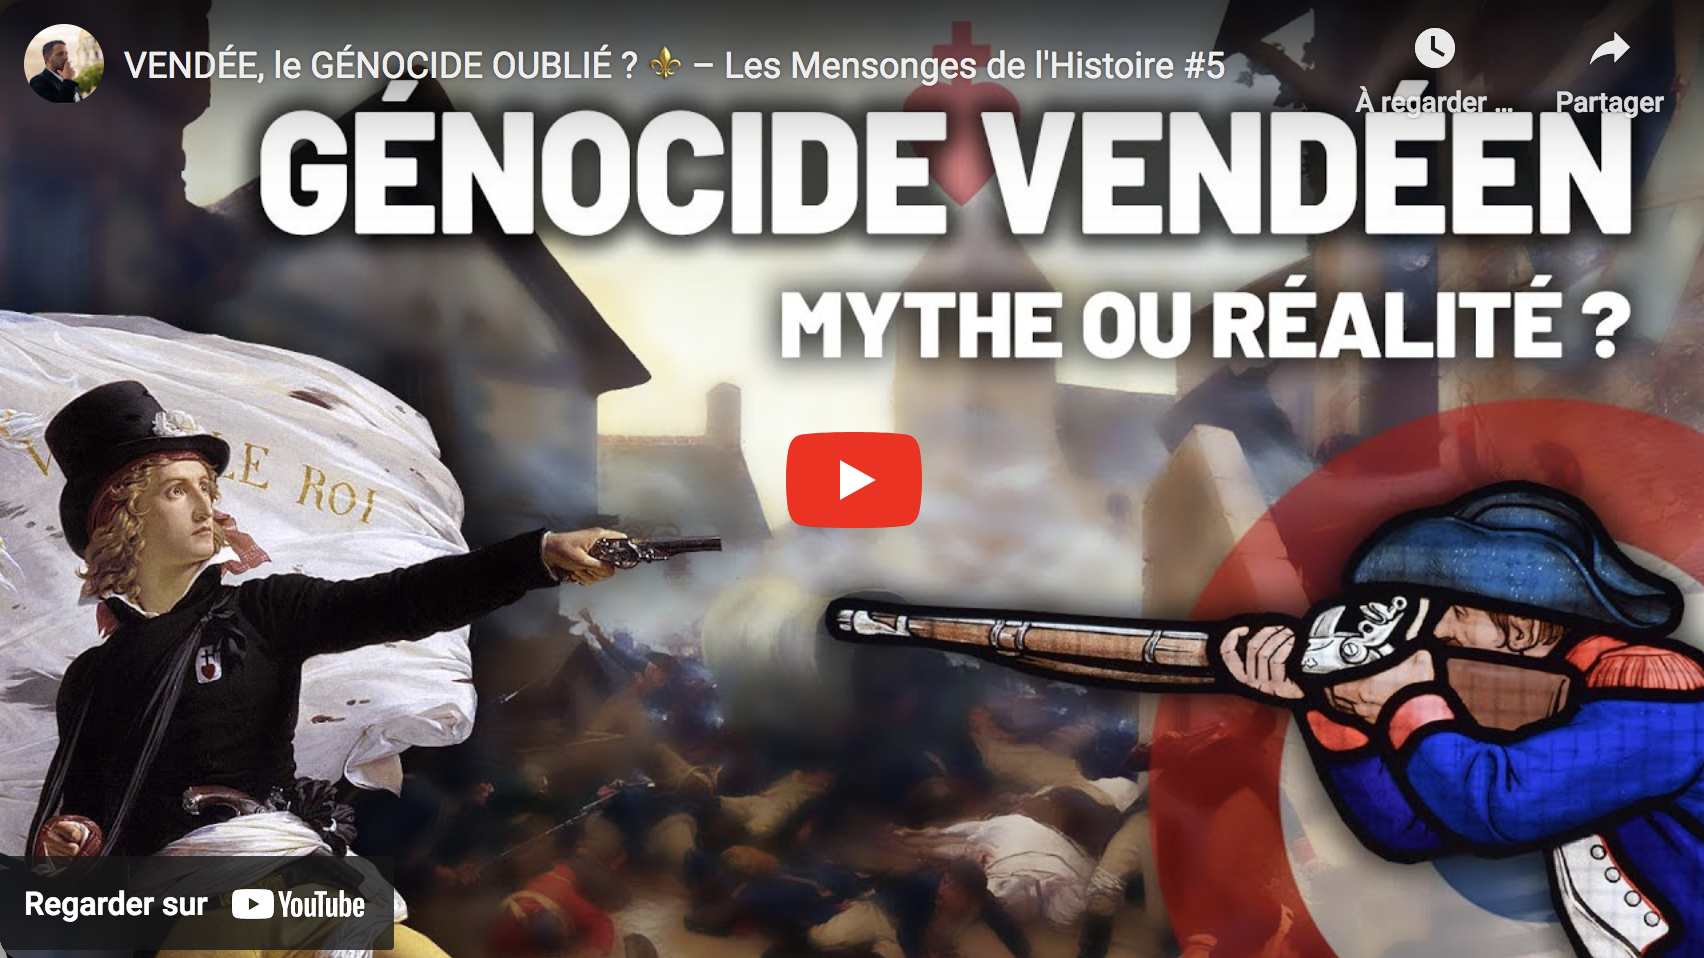 Vendée, le génocide oublié ? (Les Mensonges de l’Histoire #5)